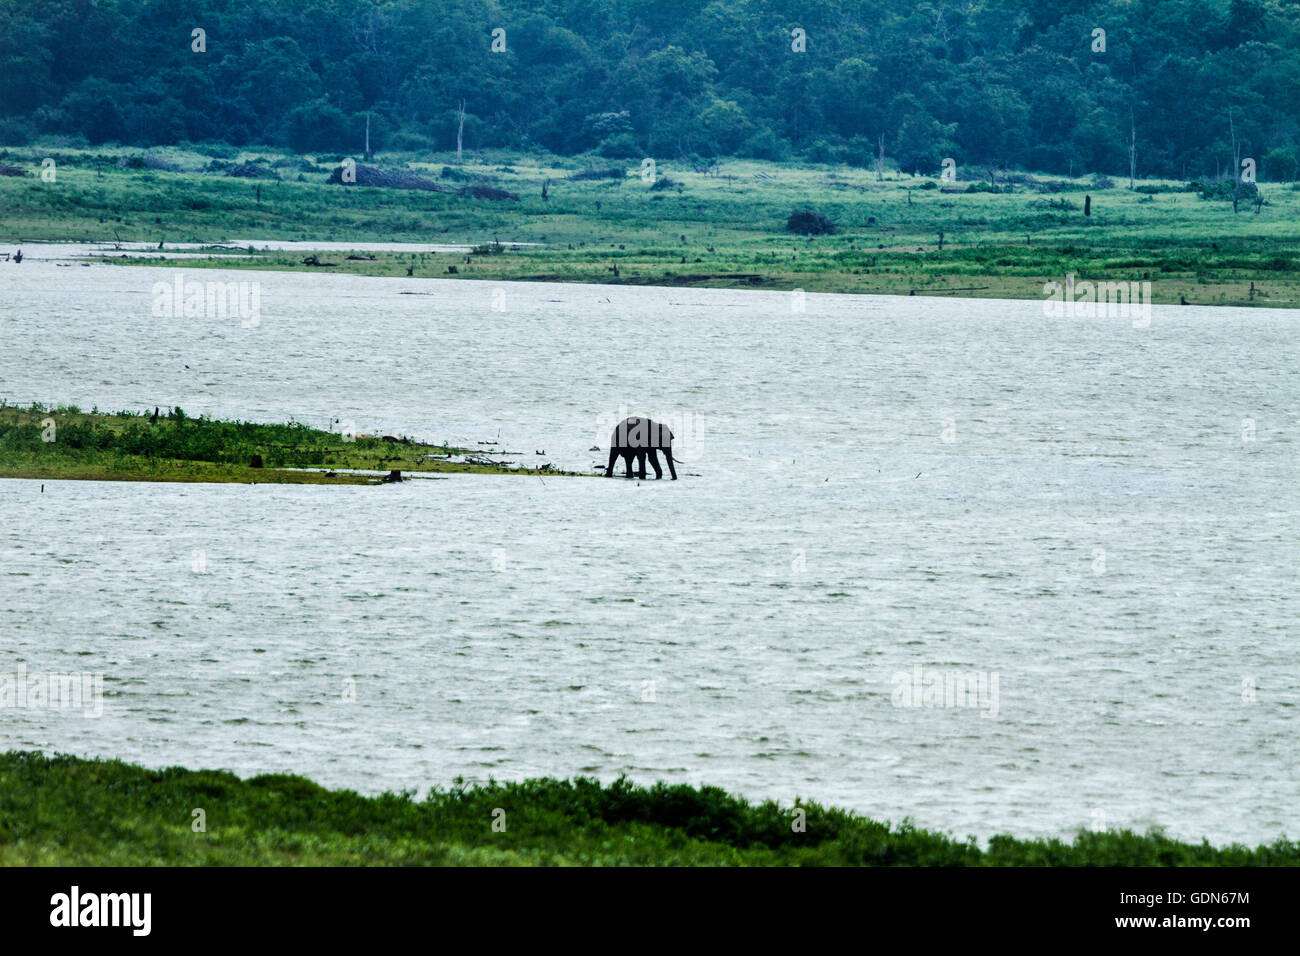 Wild Elephant walking towards lake of Kabini national park, India. Stock Photo